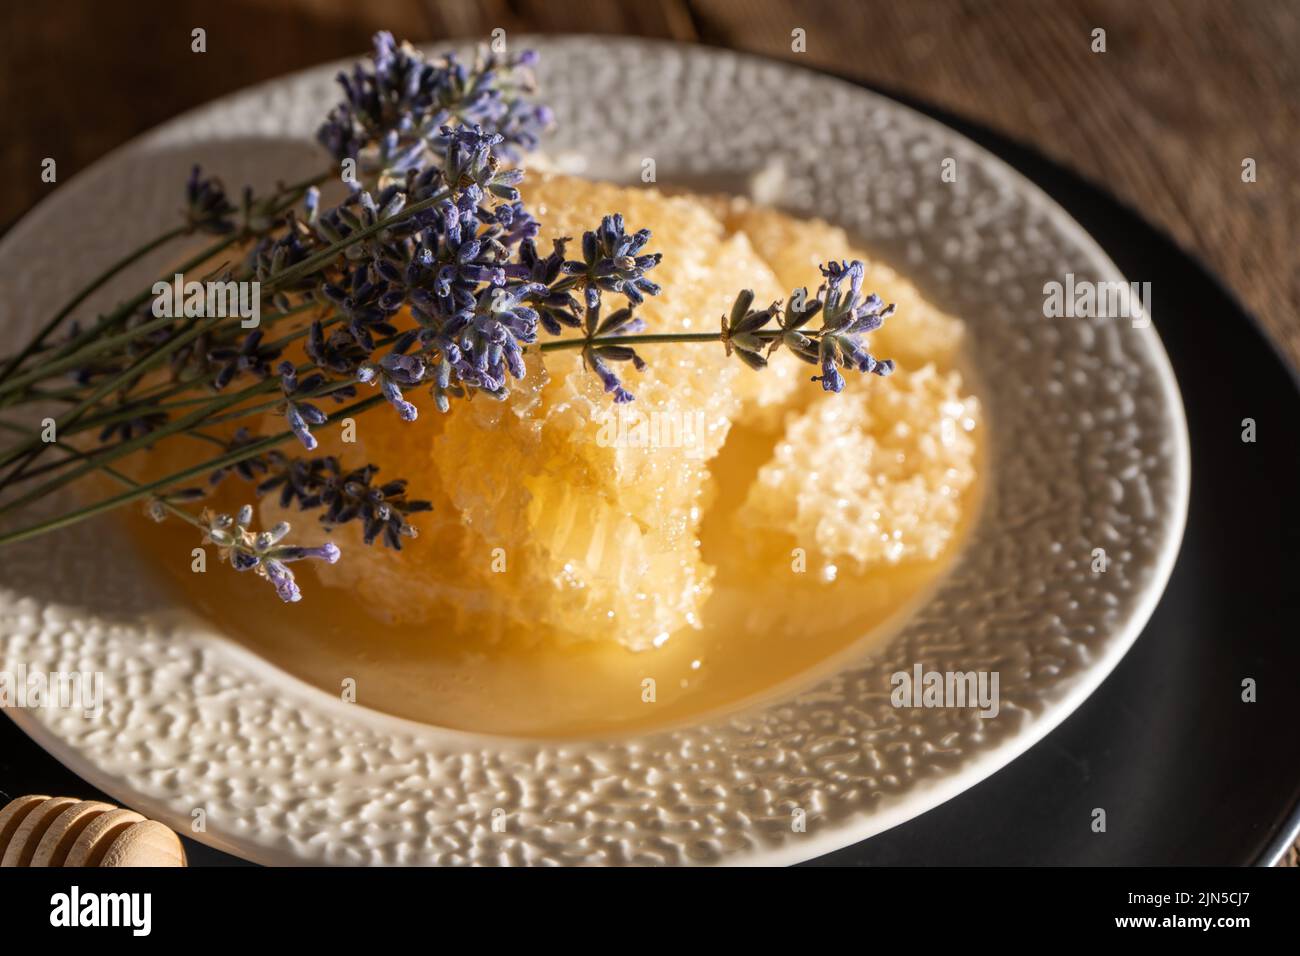 Miele e nido d'ape su un piatto bianco. Cibo dolce in una ciotola sul tavolo. Un prodotto dell'apicoltura. Fiore di lavanda. Foto Stock